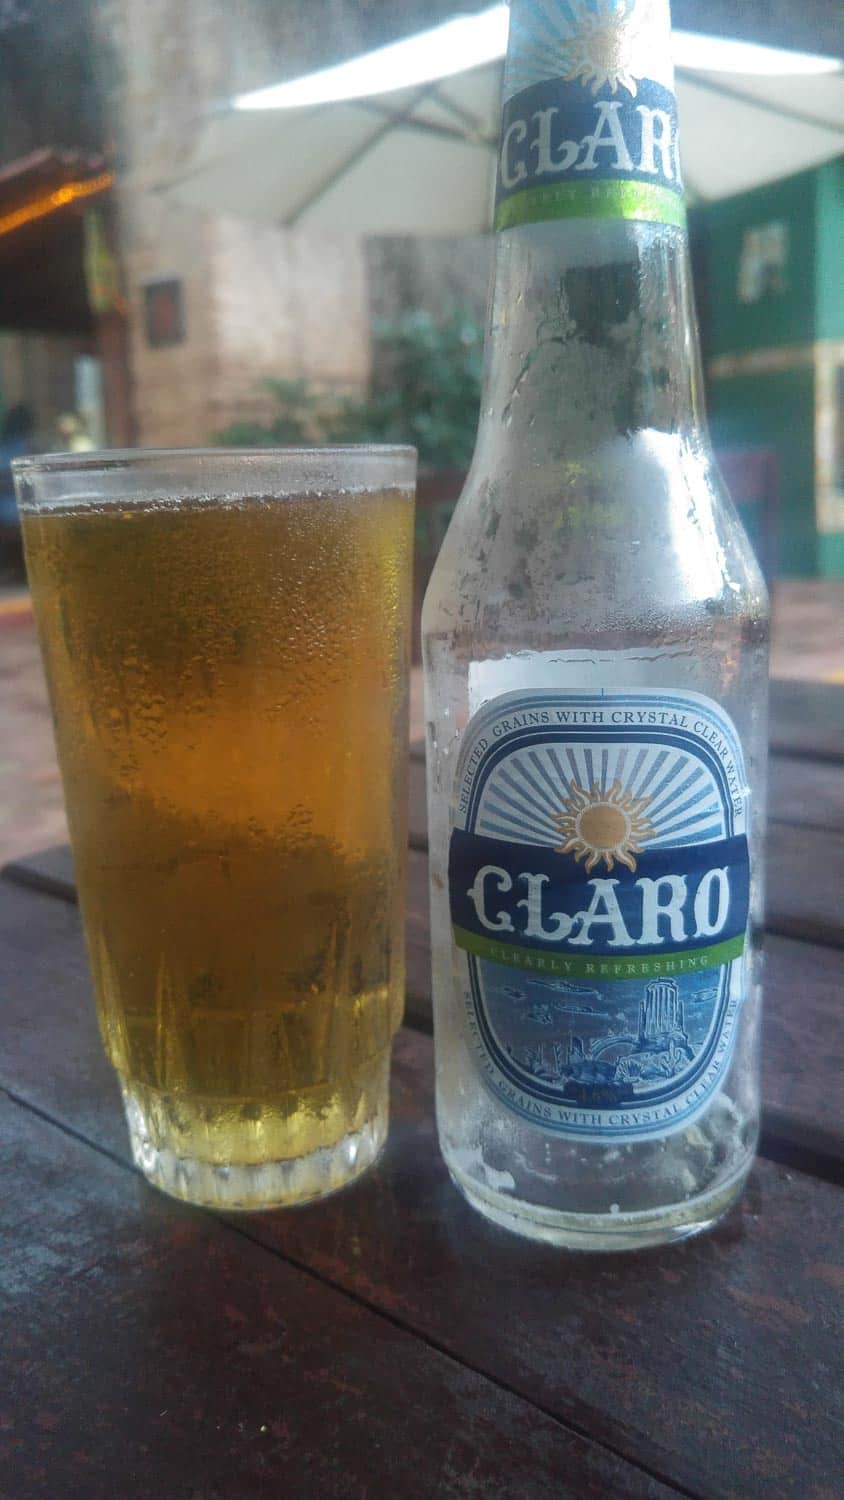 claro beer in Cuba